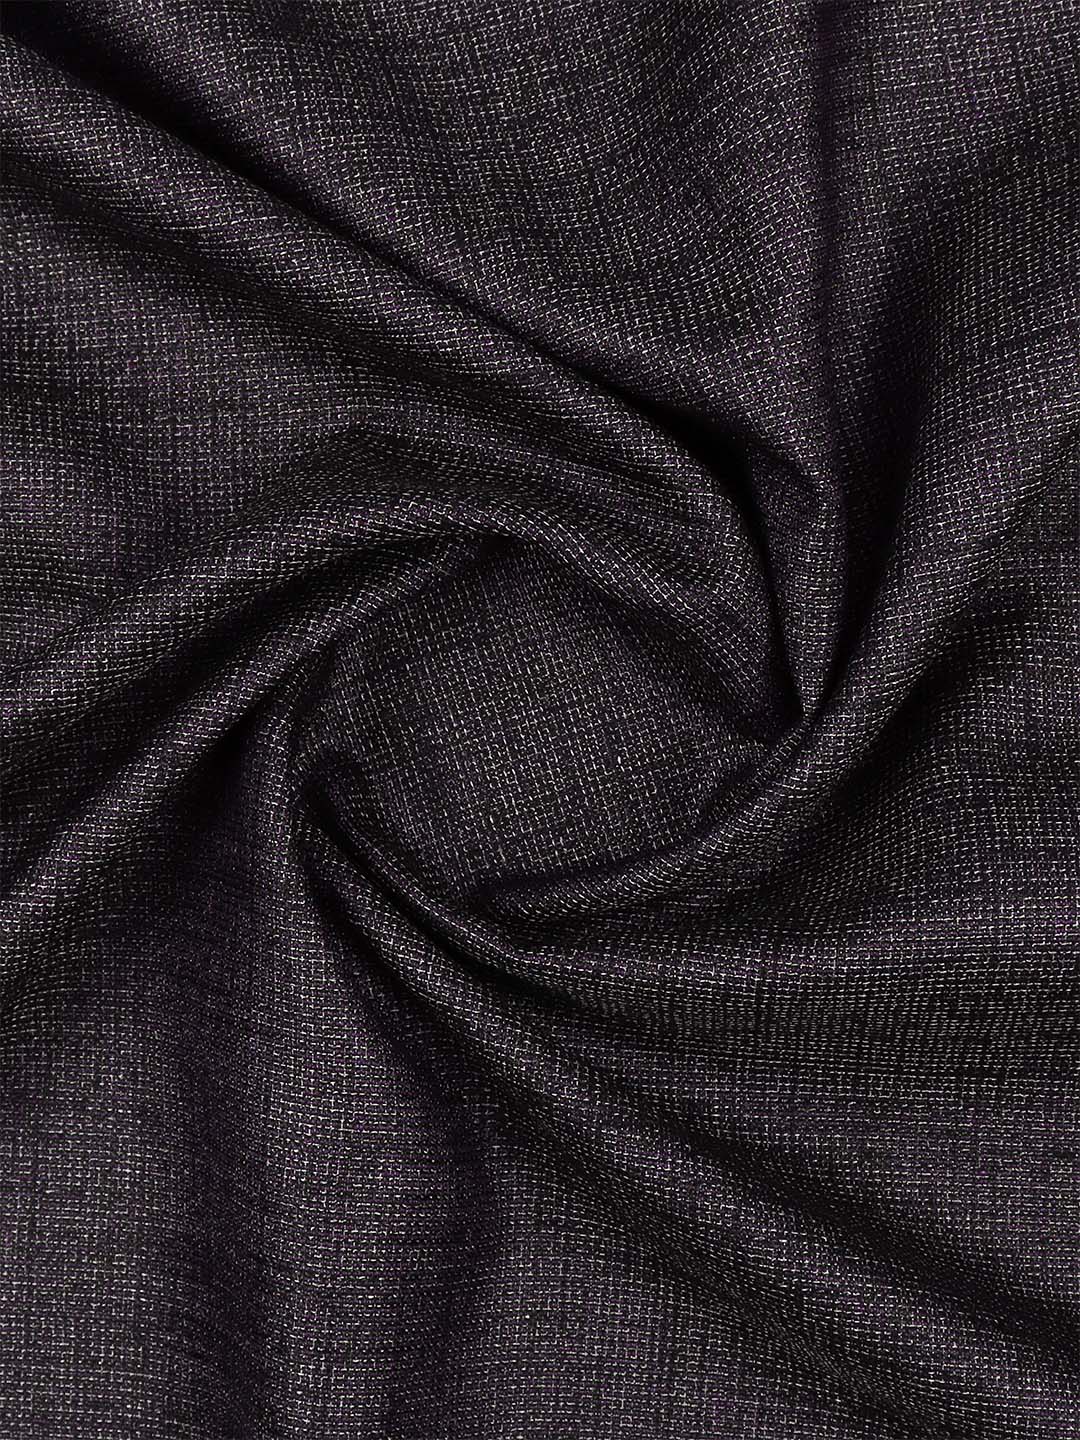 Premium Cotton Colour Purple Pants Fabric Air Craft